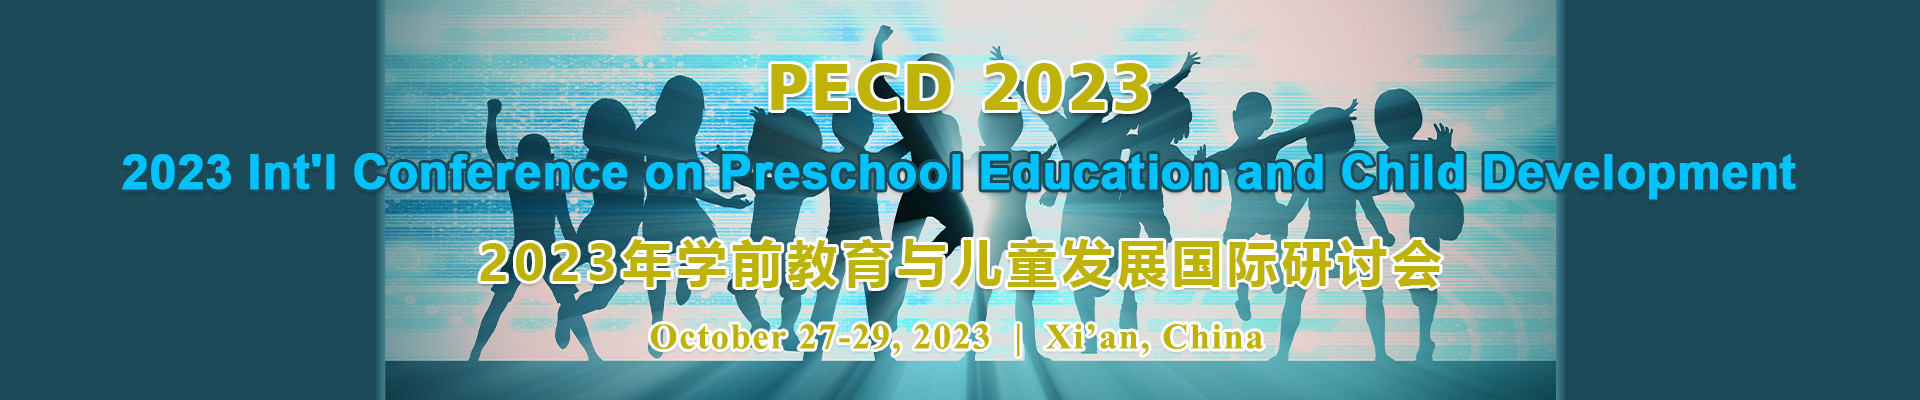 2023年学前教育与儿童发展国际研讨会 (PECD 2023) 